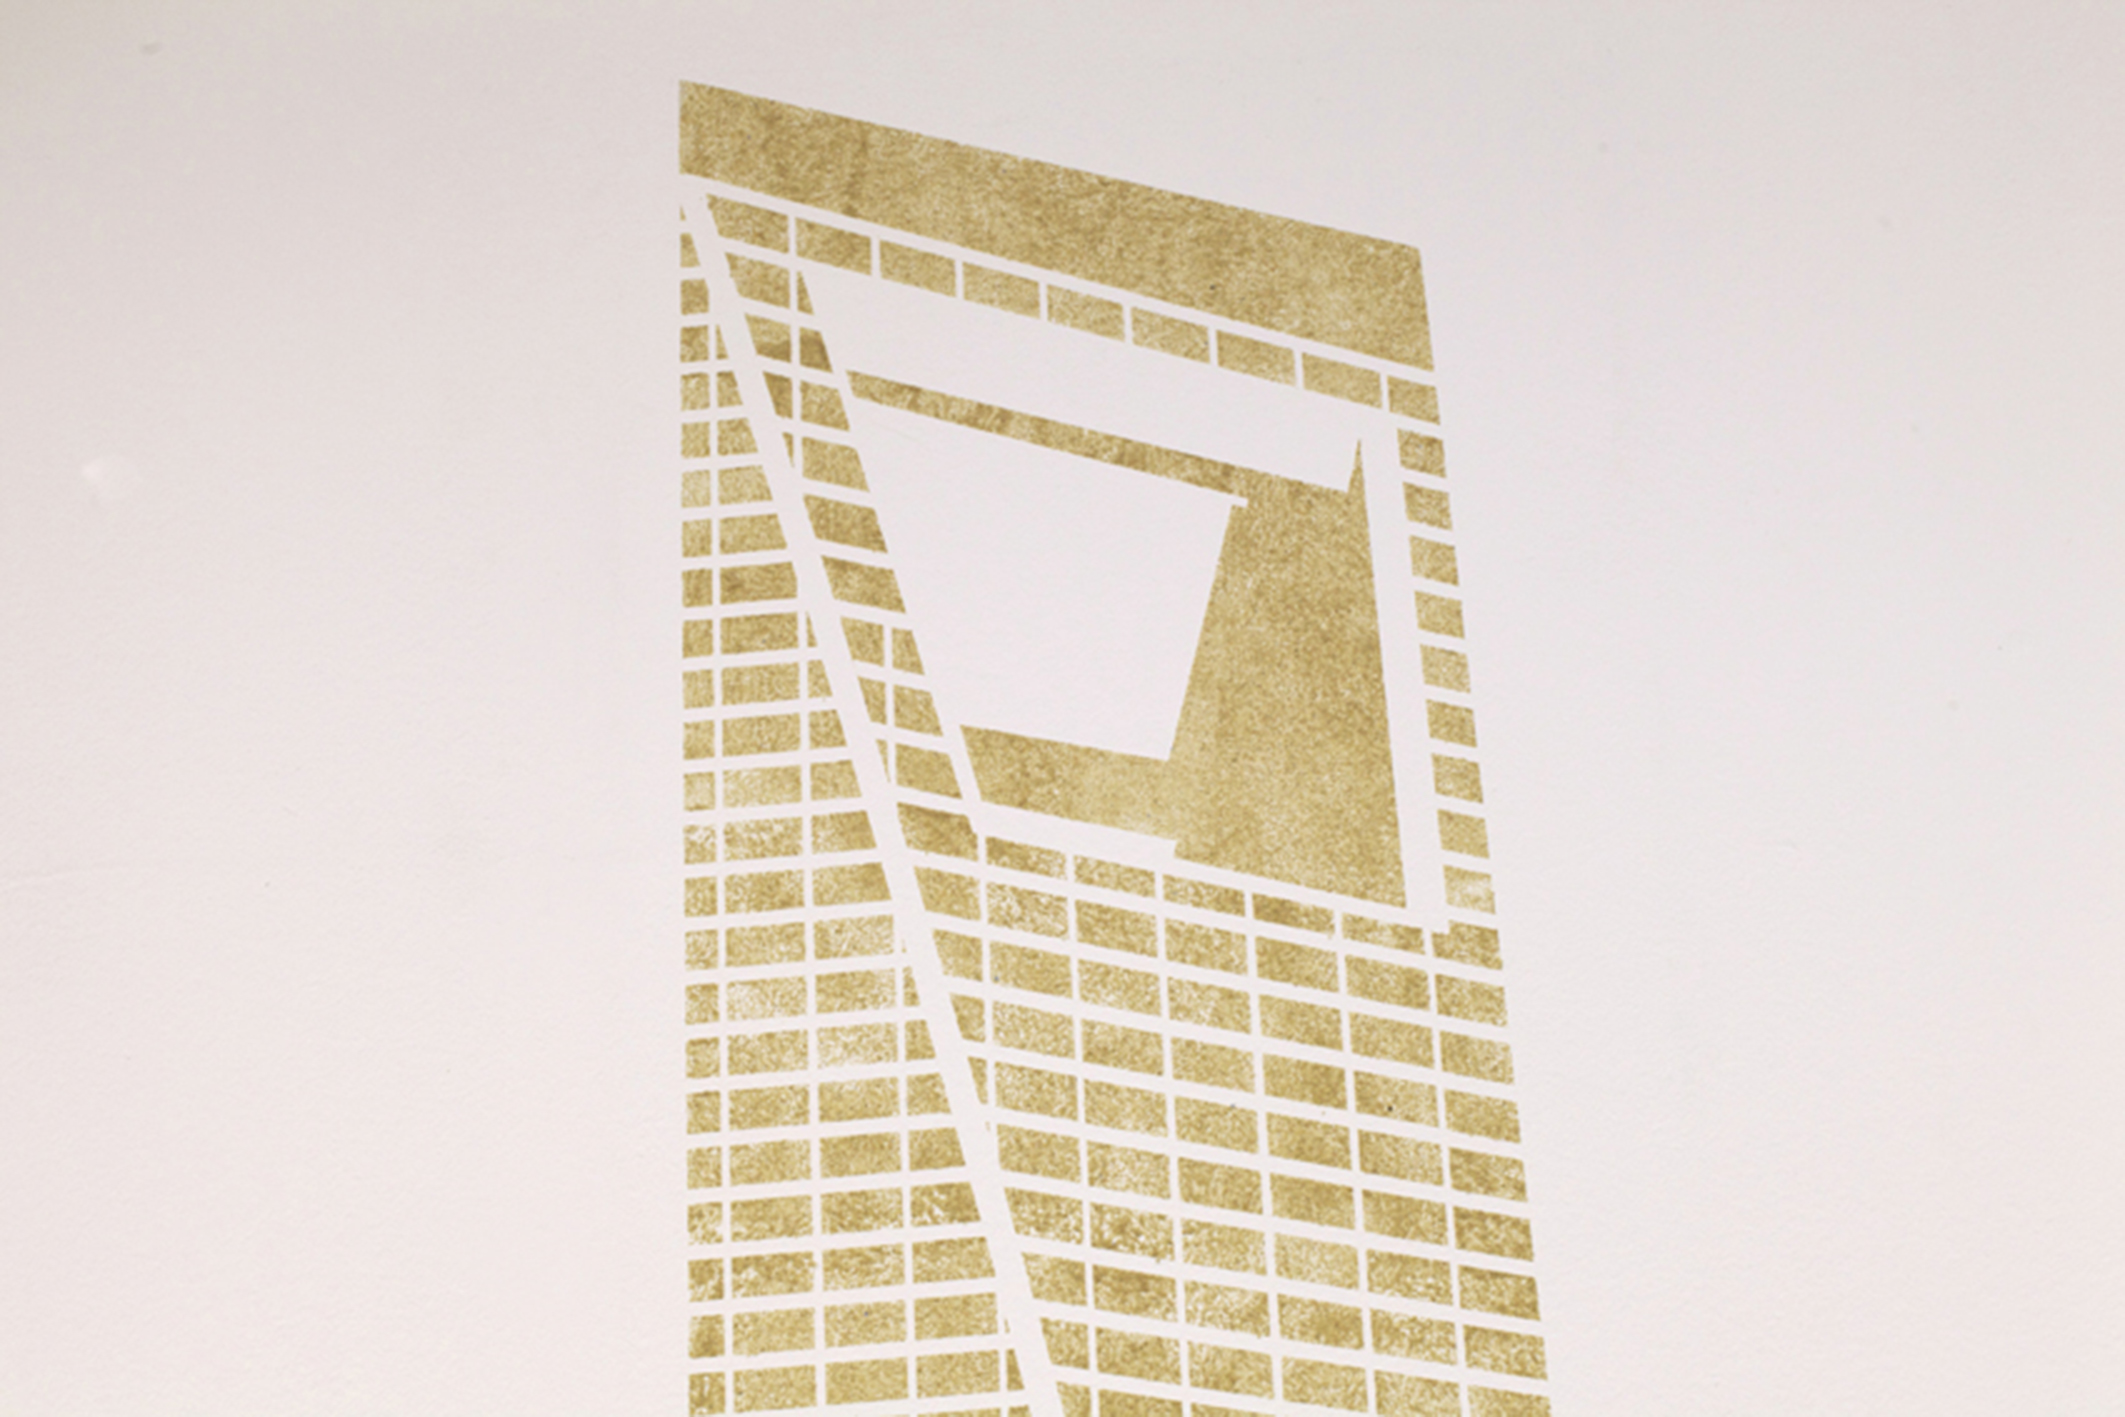 Benoît Billotte, Château de sable, 2012, dessin au sable sur verre, dimensions variables
